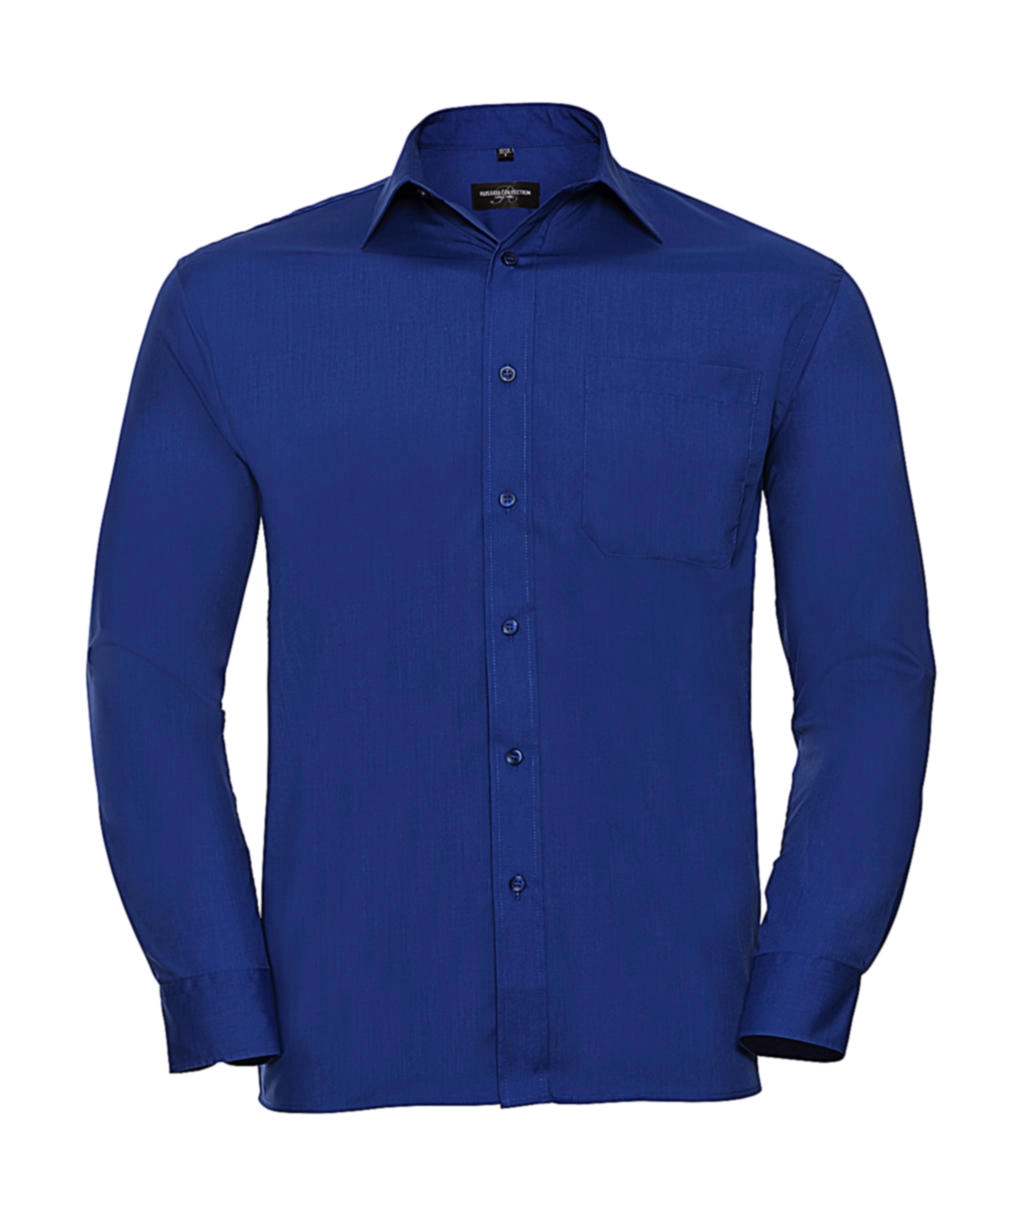 Poplin Shirt LS zum Besticken und Bedrucken in der Farbe Bright Royal mit Ihren Logo, Schriftzug oder Motiv.